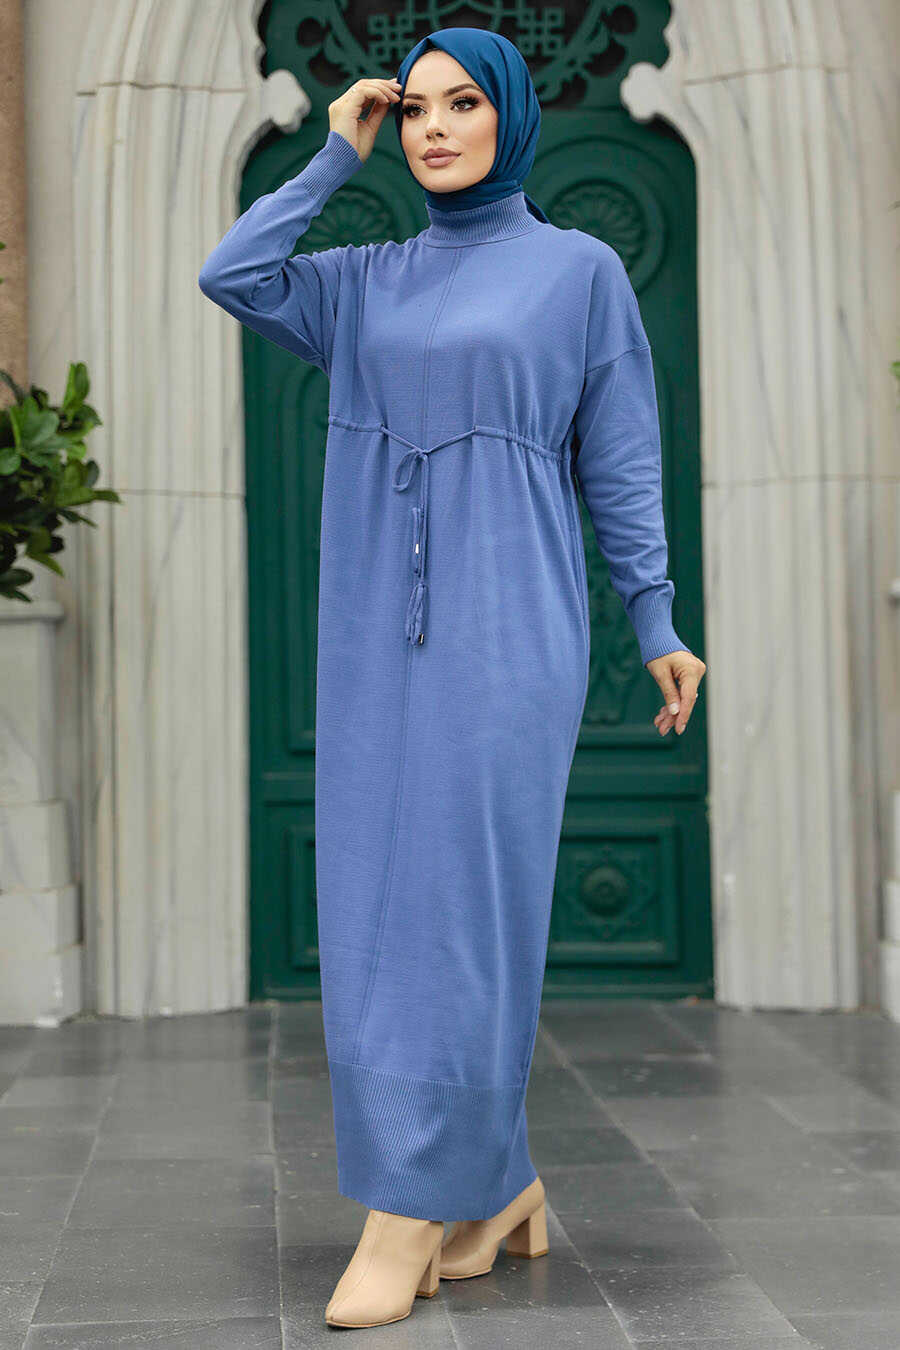 Neva Style - İndigo Blue Hijab Mercerized Dress 10158IM